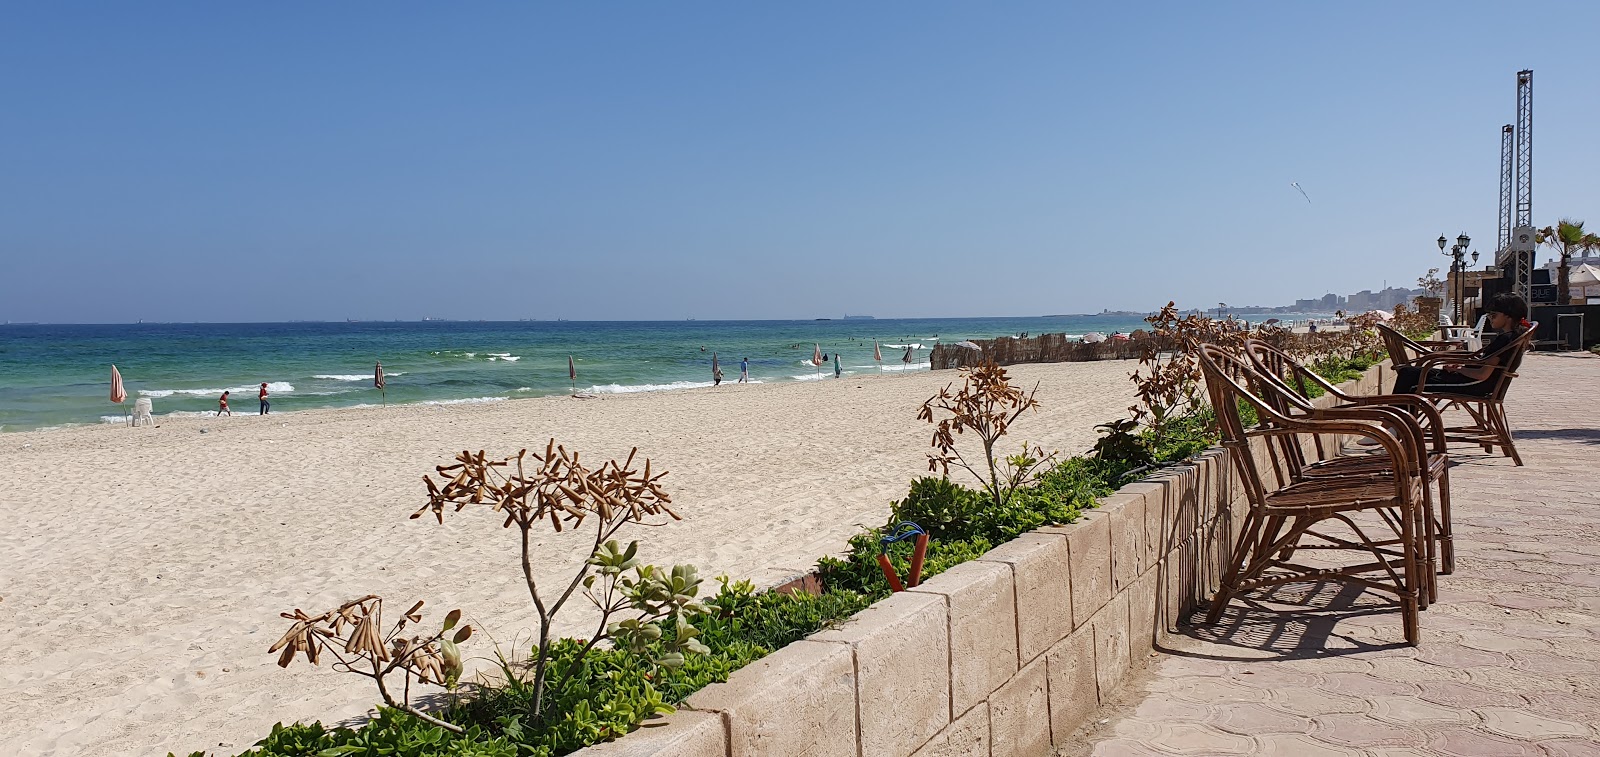 Foto de Al-Ajami Beach - lugar popular entre los conocedores del relax